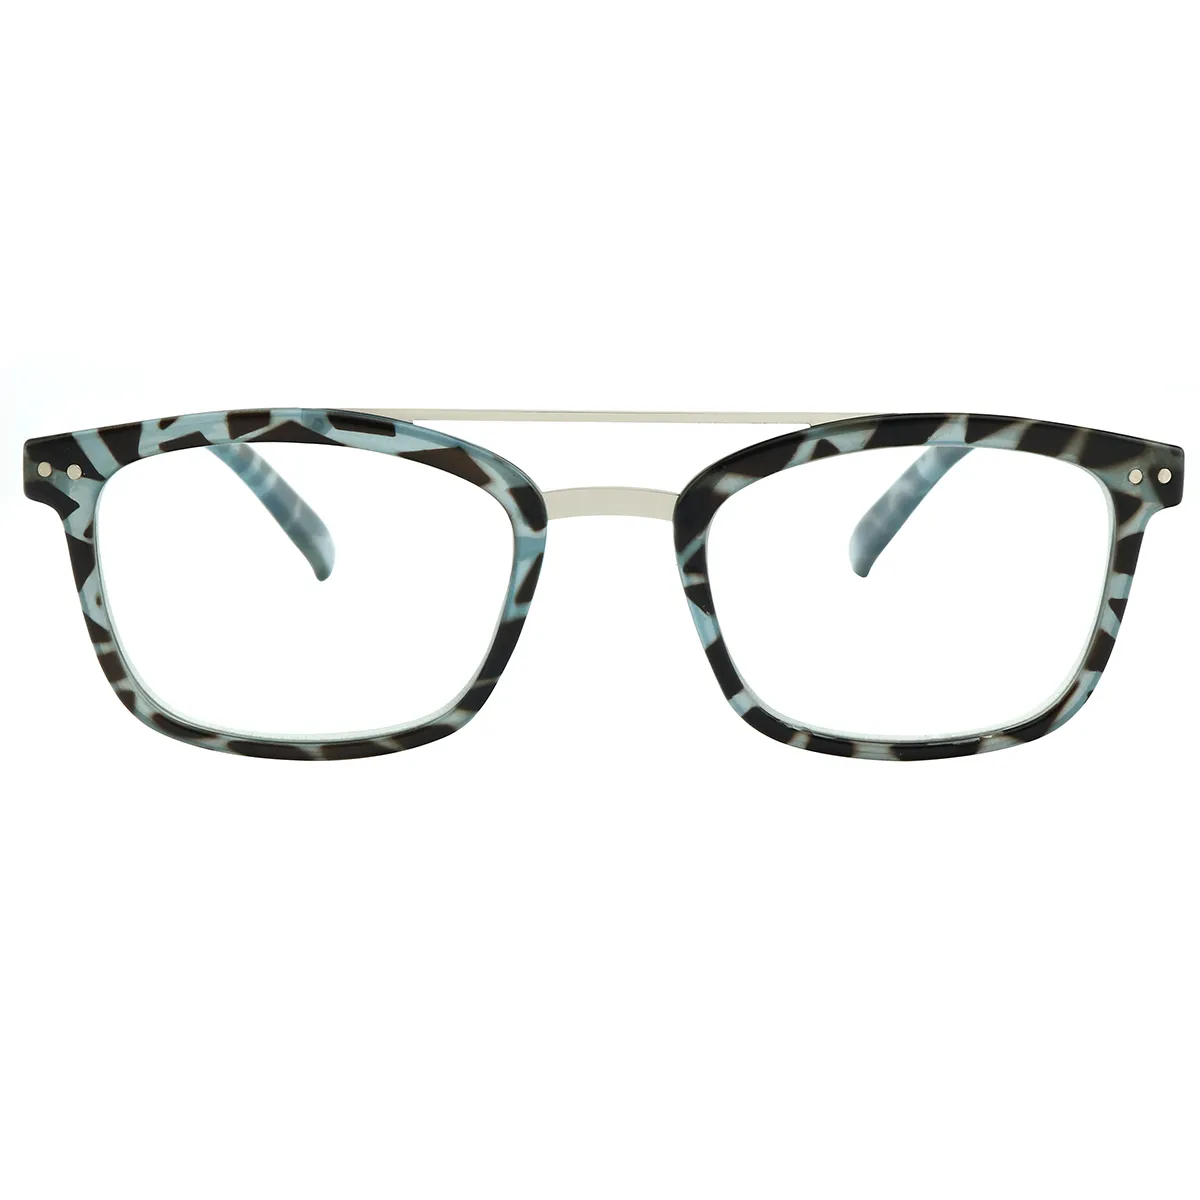 Penn - Aviator Blue-Tortoiseshell Reading glasses for Women